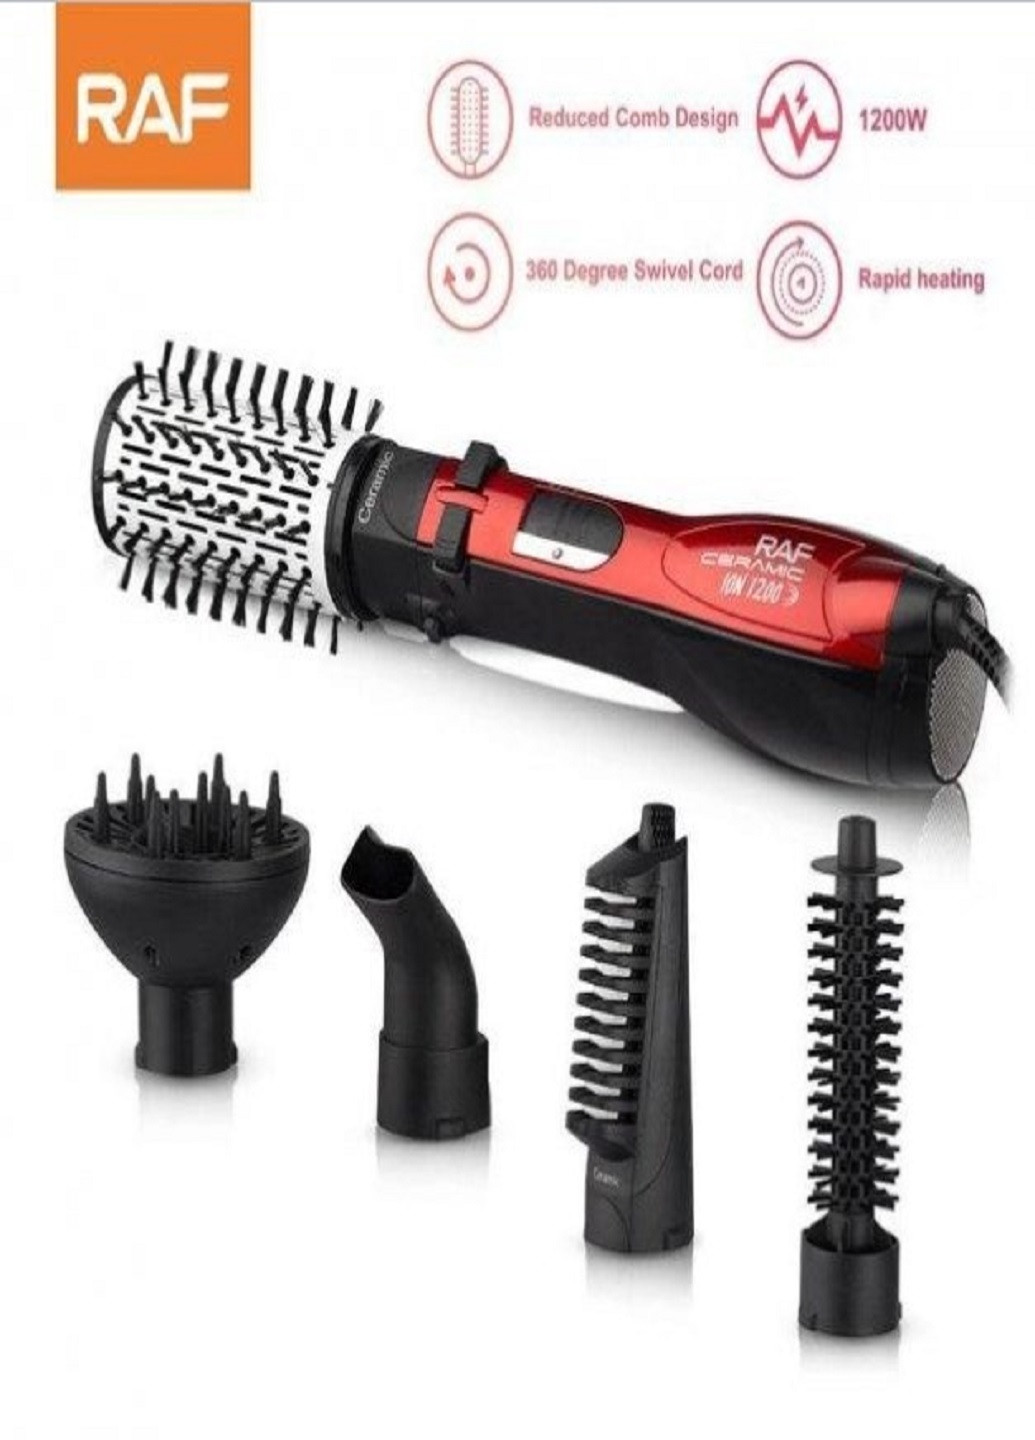 Фен щетка Rotative Brush R416 расческа браш 5 в 1 для волос RAF (259522130)